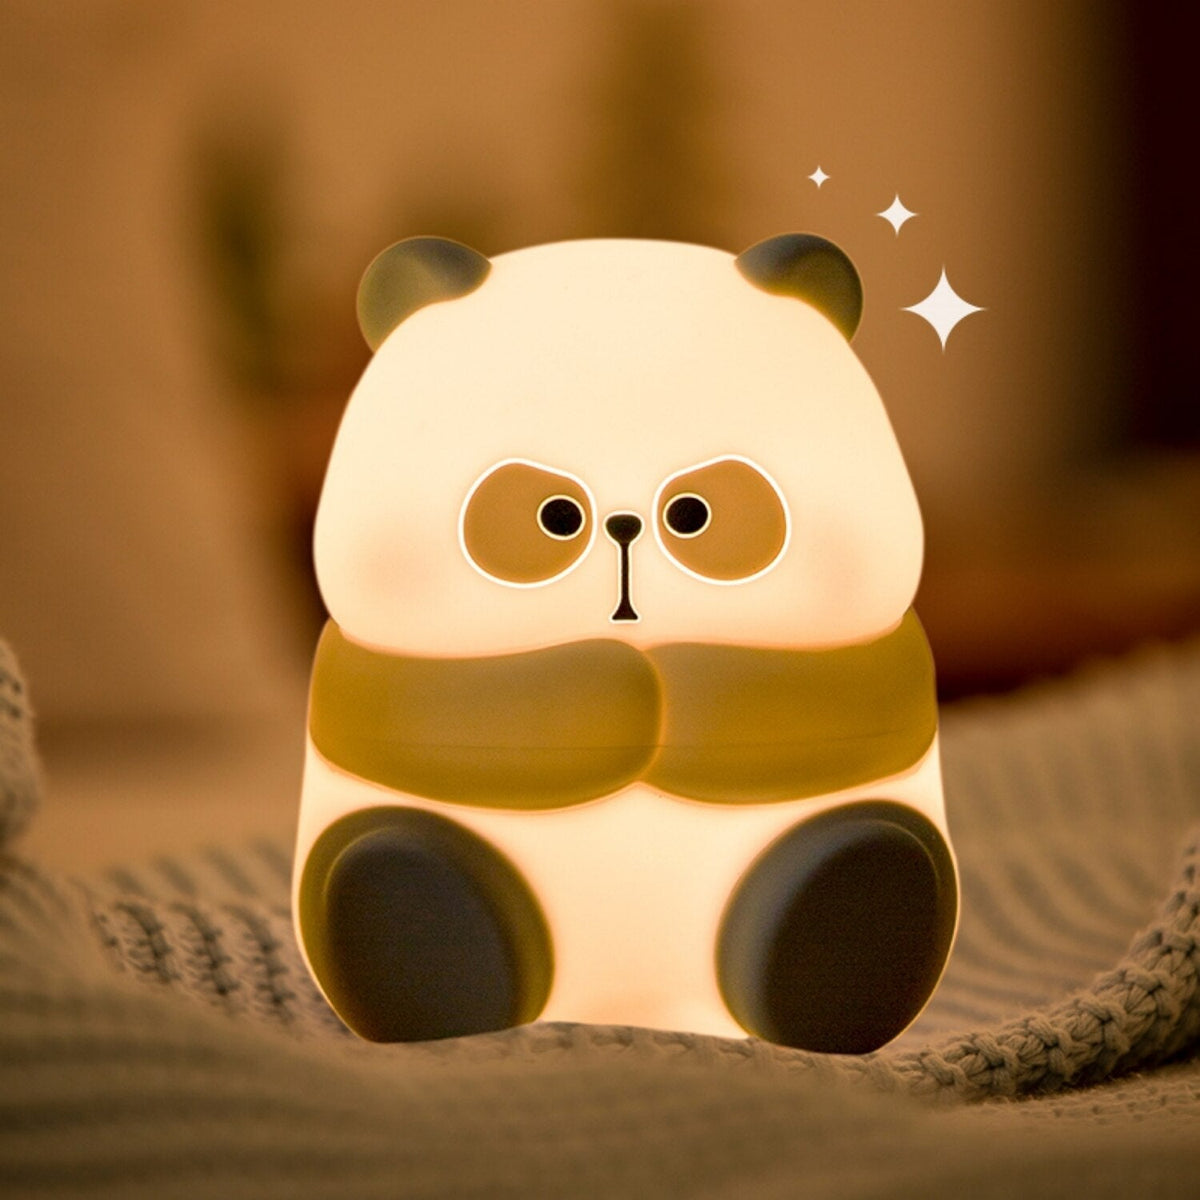 Chubby Kawaii Bunny Panda Pig Tiger LED Night Light Collection